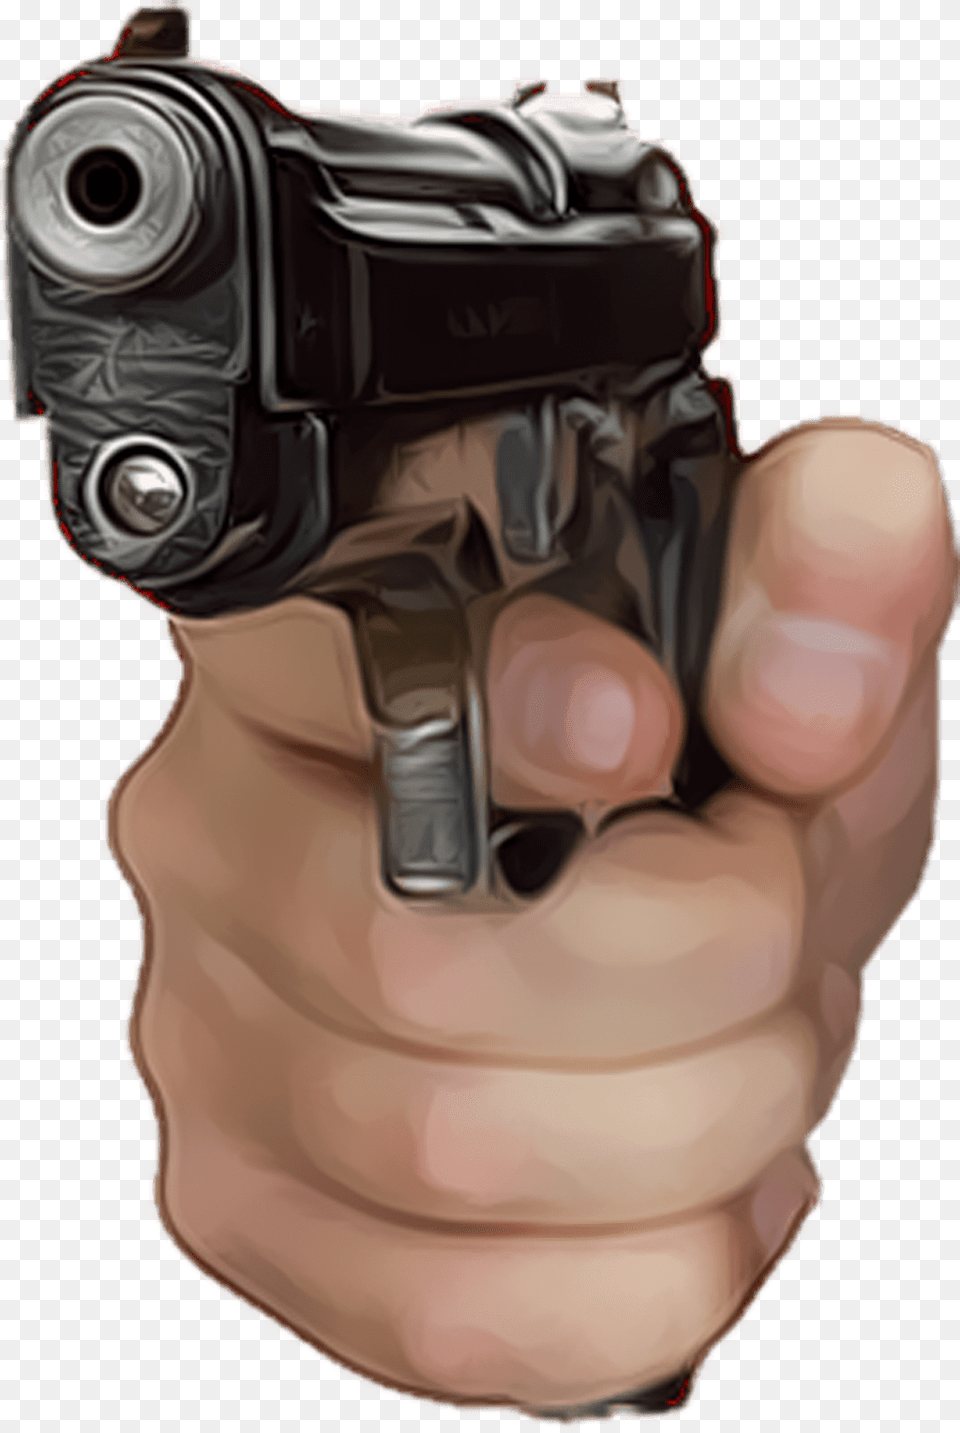 Gun In Hand Clipart Hand Gun, Firearm, Handgun, Weapon, Ammunition Free Png